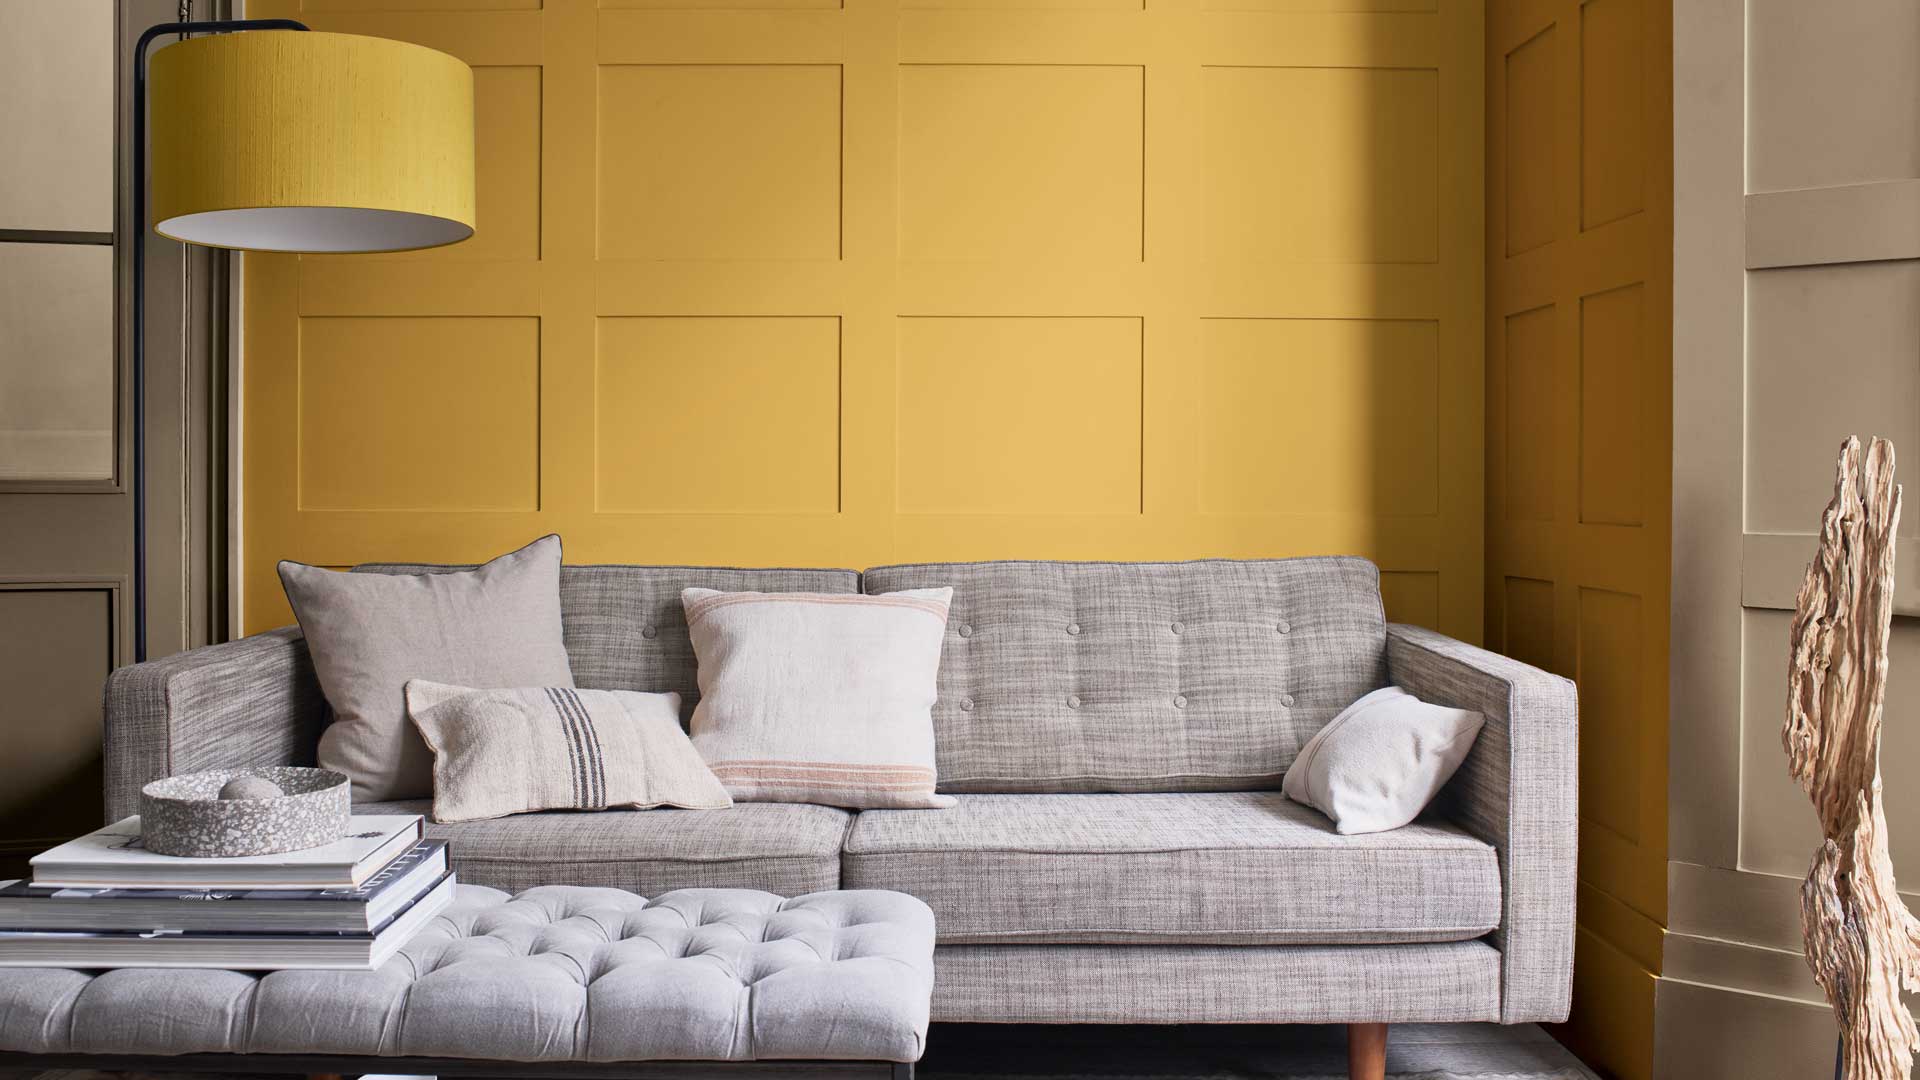 1920x1080 Ý tưởng phòng khách màu vàng - làm thế nào để che nắng một cách phong cách.  Livingetc